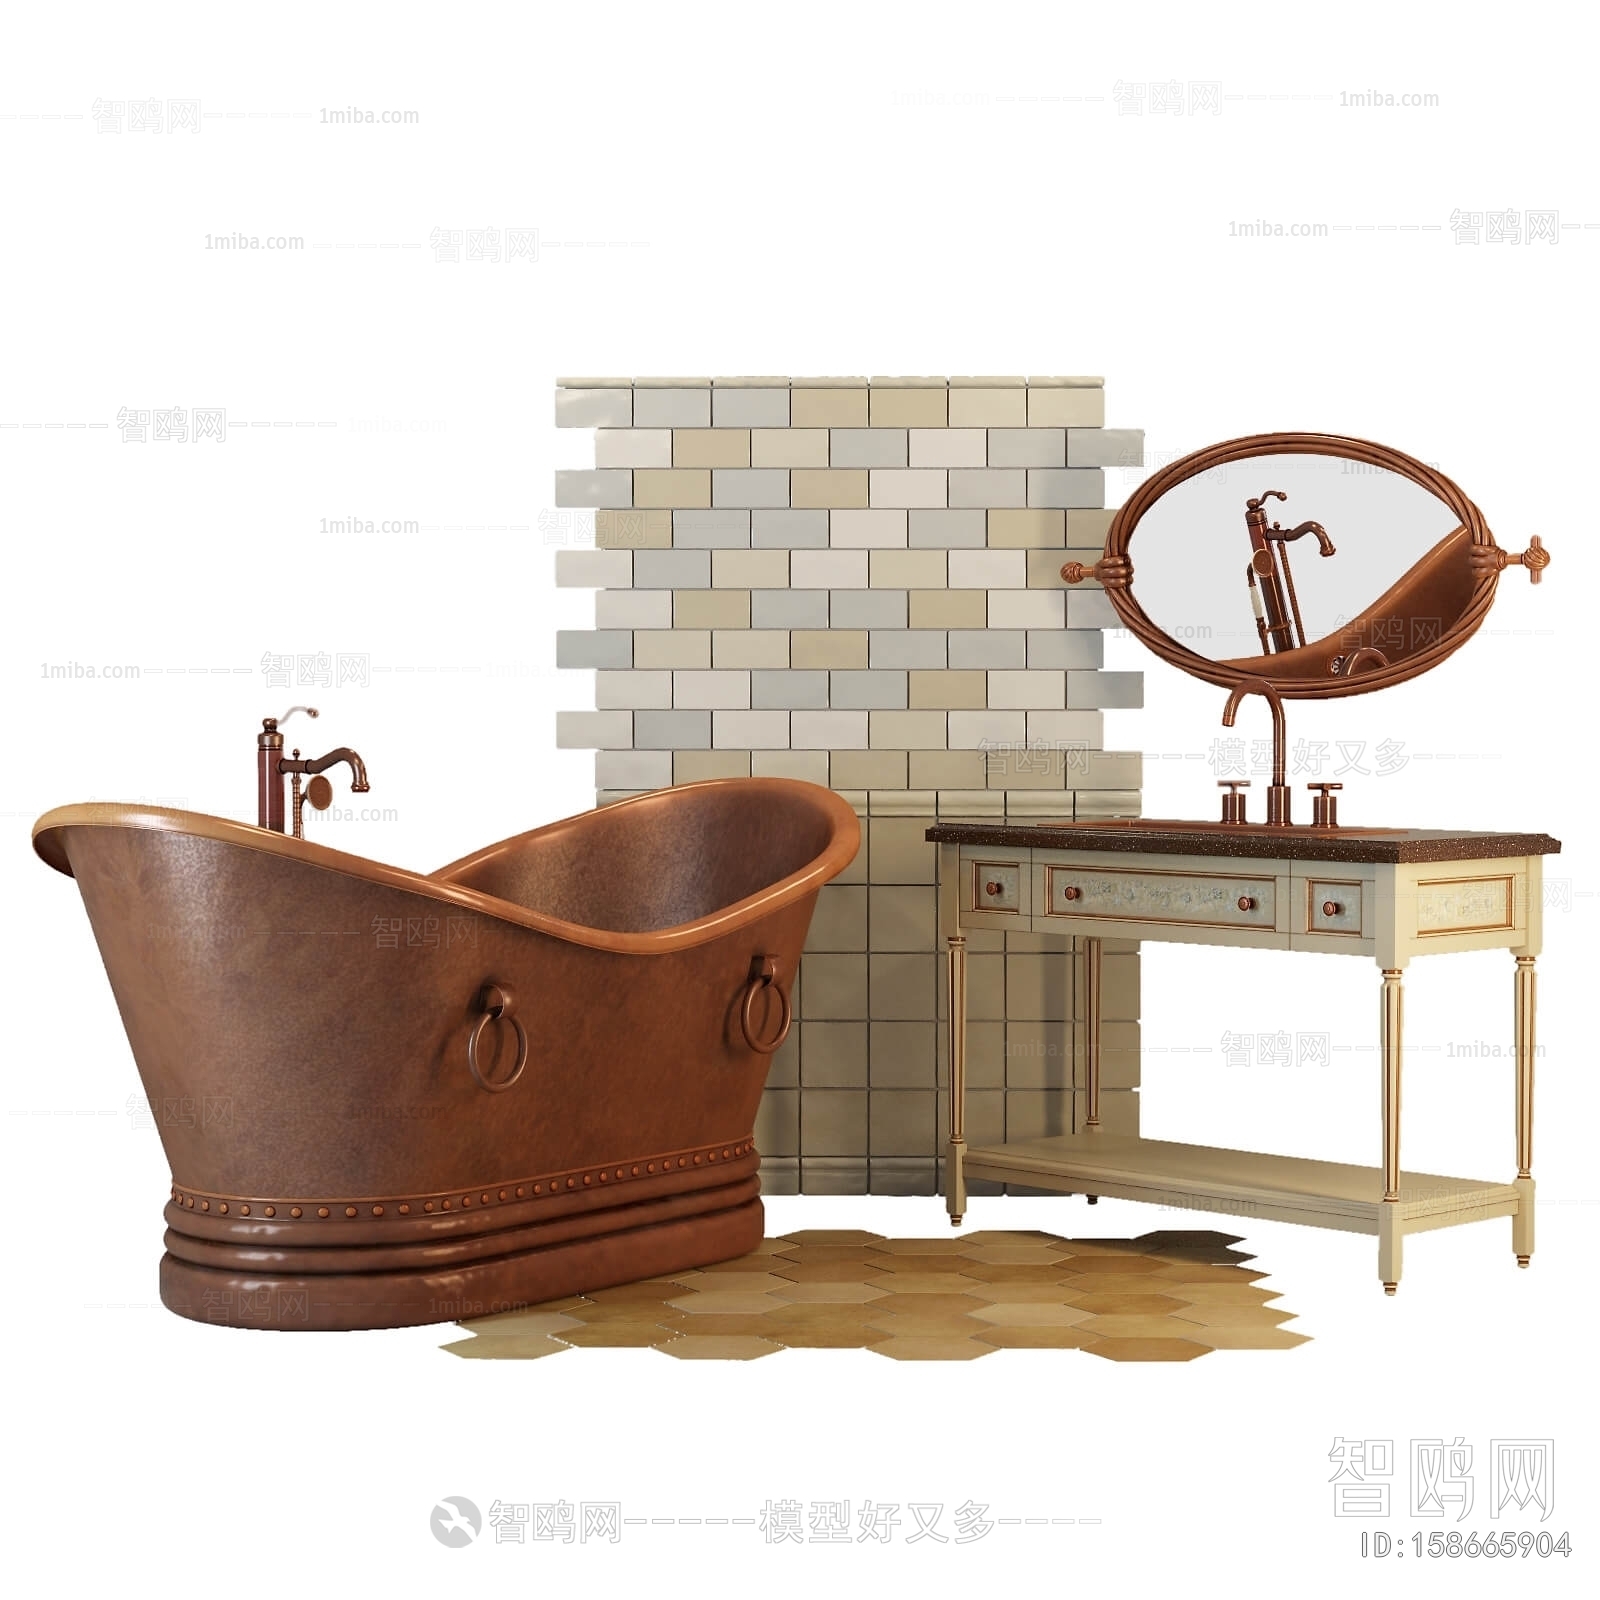 American Style Bathtub